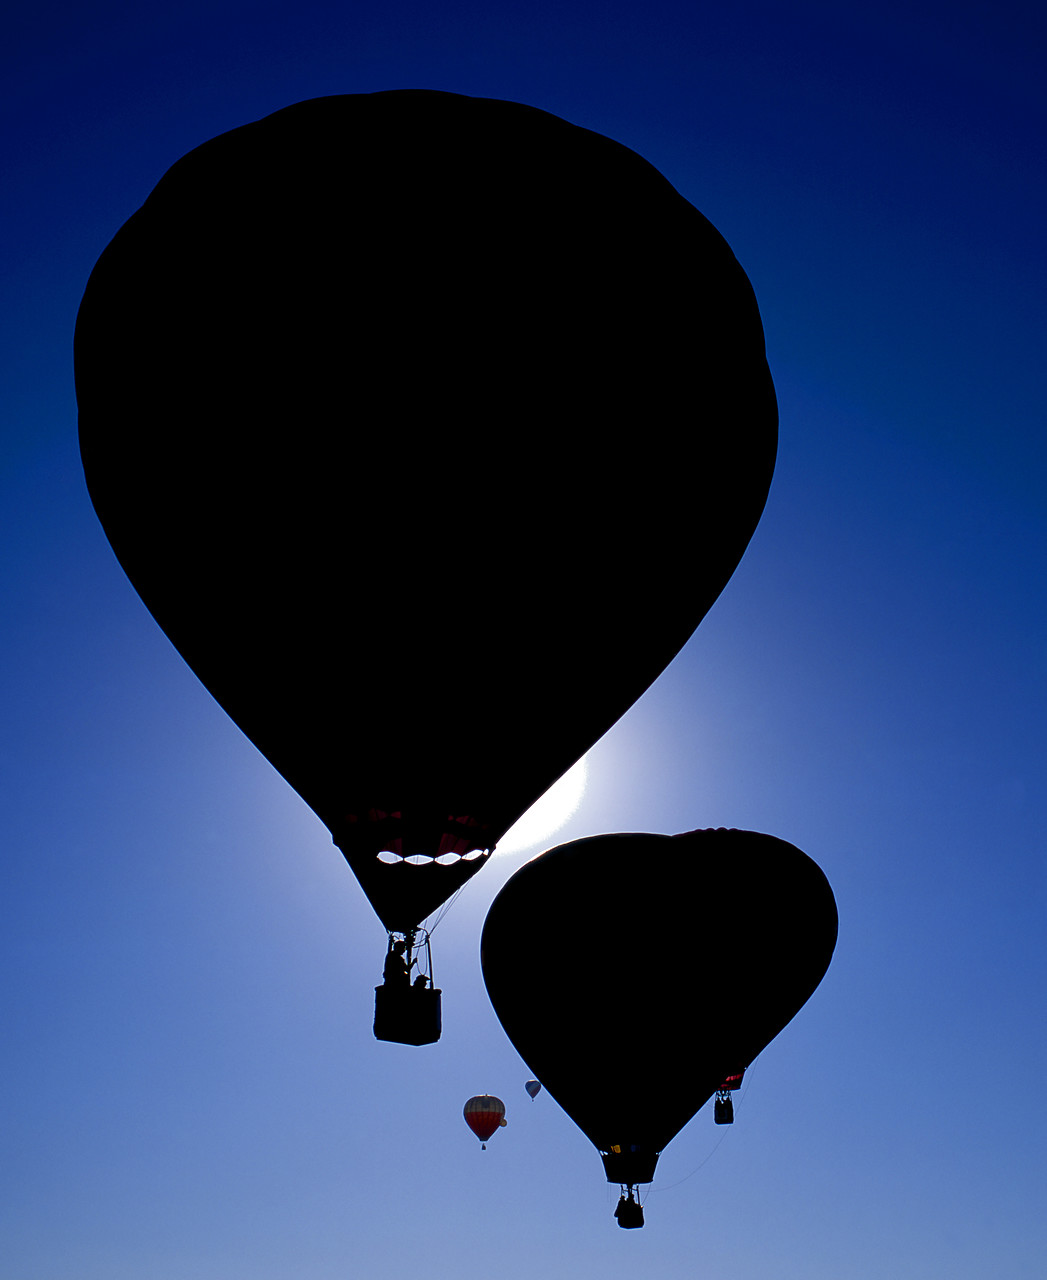 #990728-1 - Hot Air Balloon Silhouettes, Albuquerque, New Mexico, USA